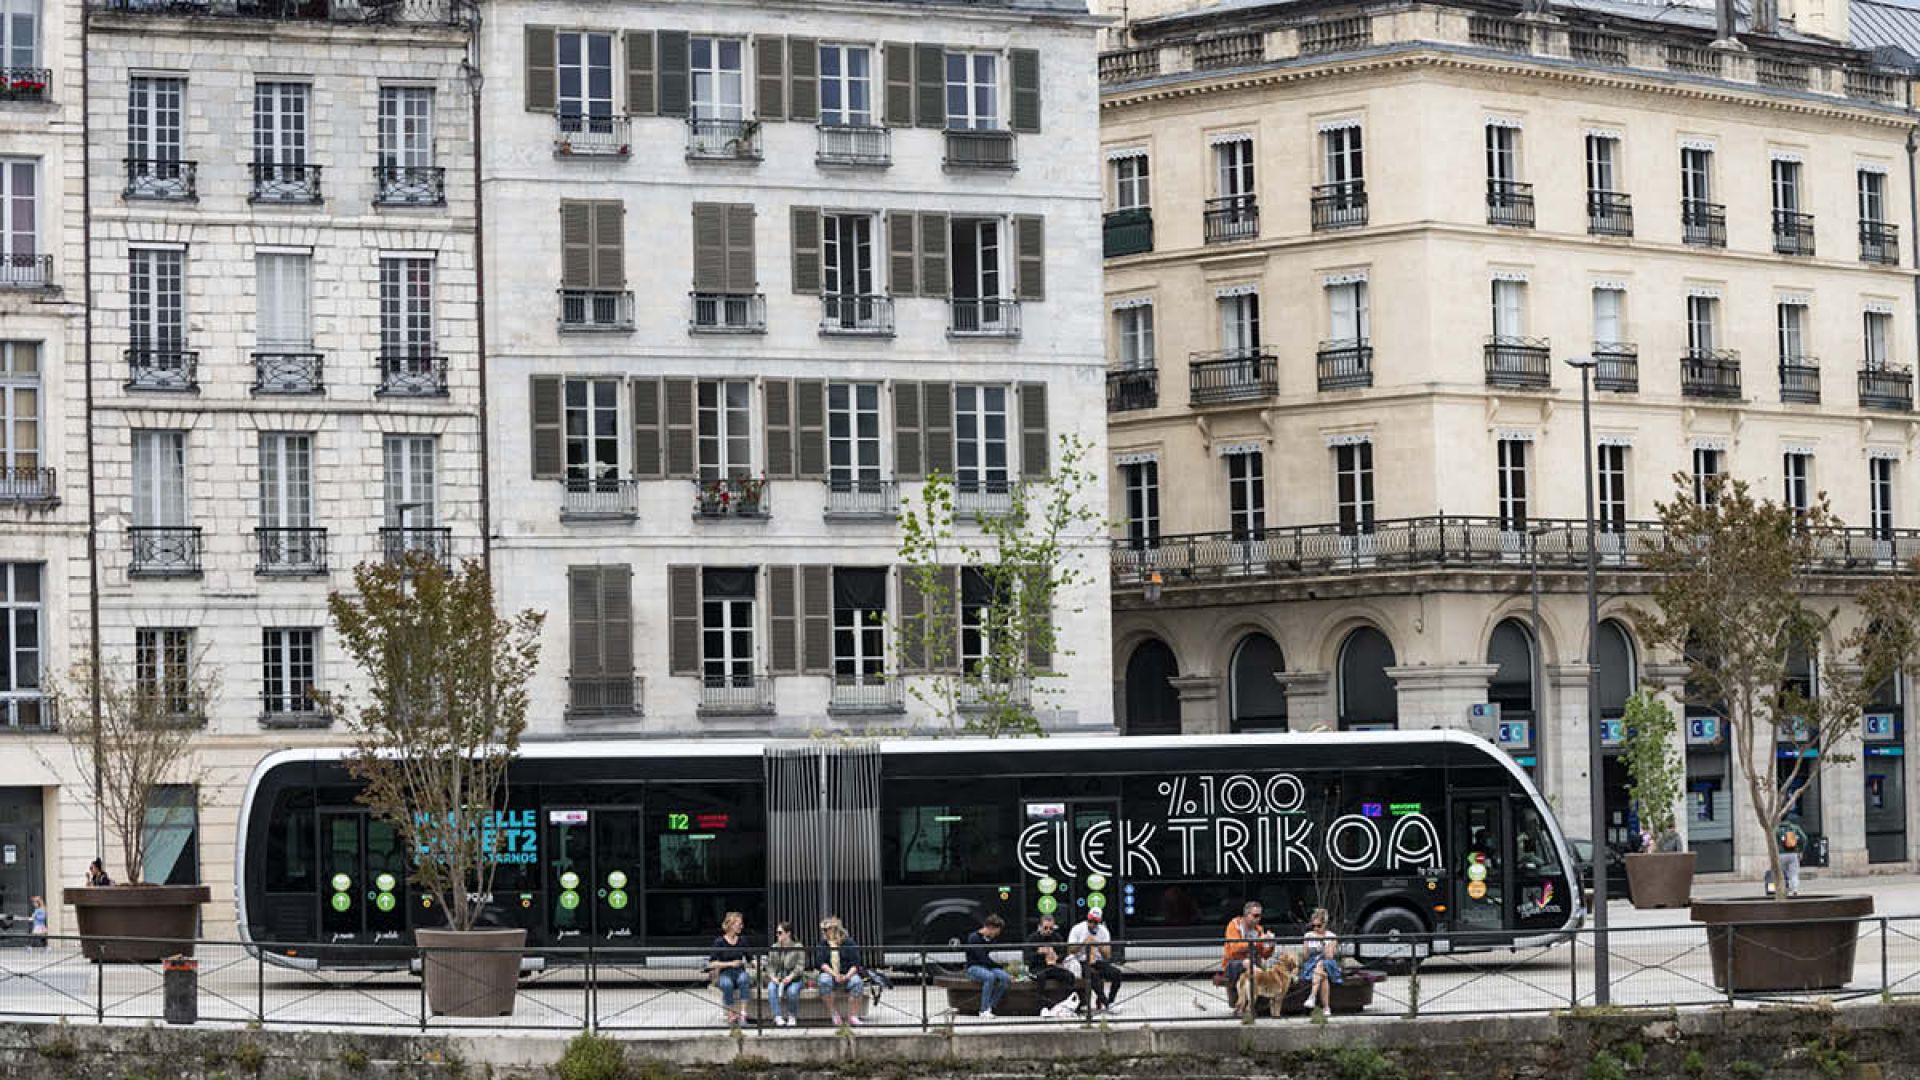 The Communauté d'agglomération du Pays Basque has once again chosen Irizar e-mobility electric Tram’bus